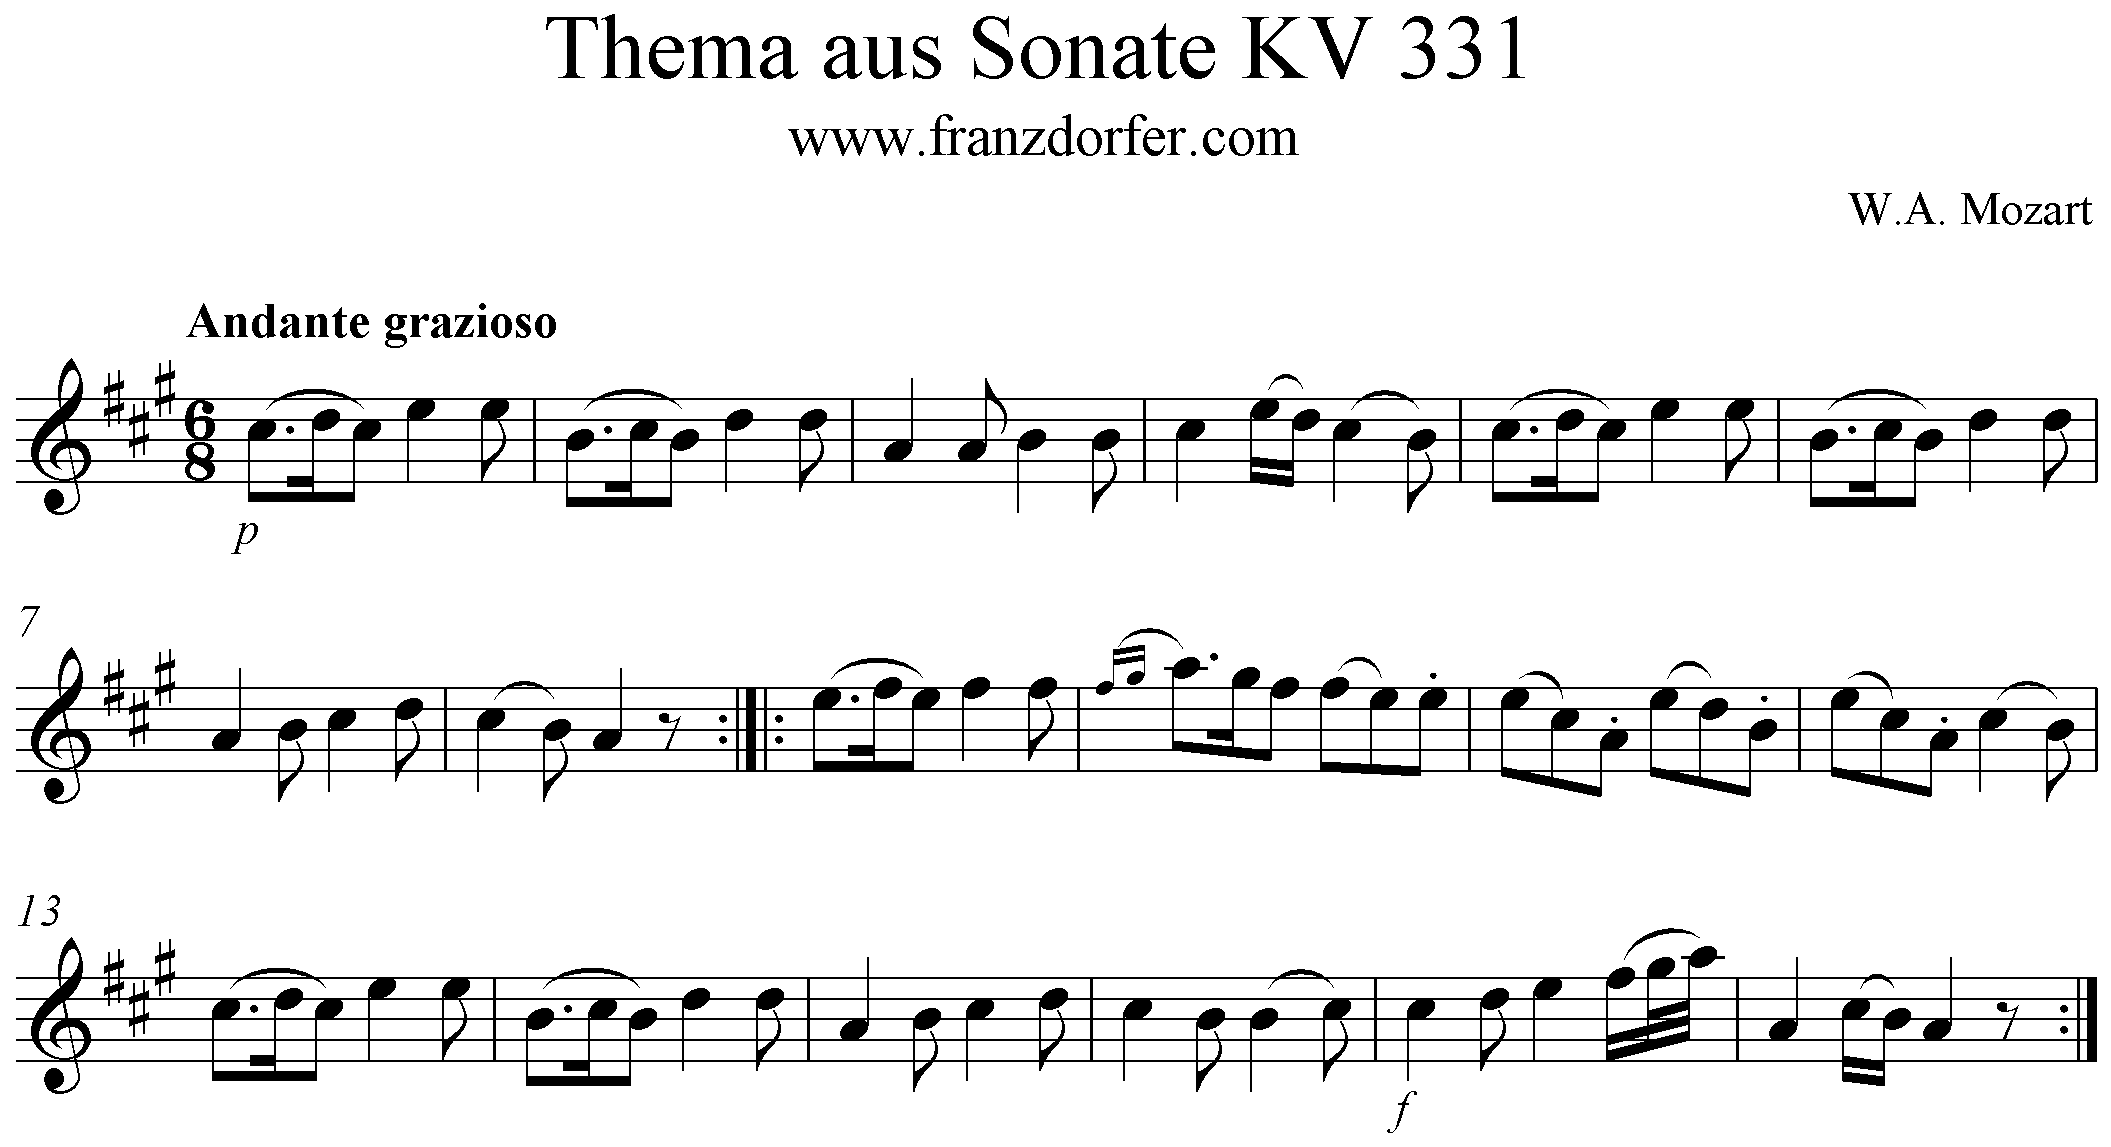 Andante grazioso KV 331 - Theme, Solopart